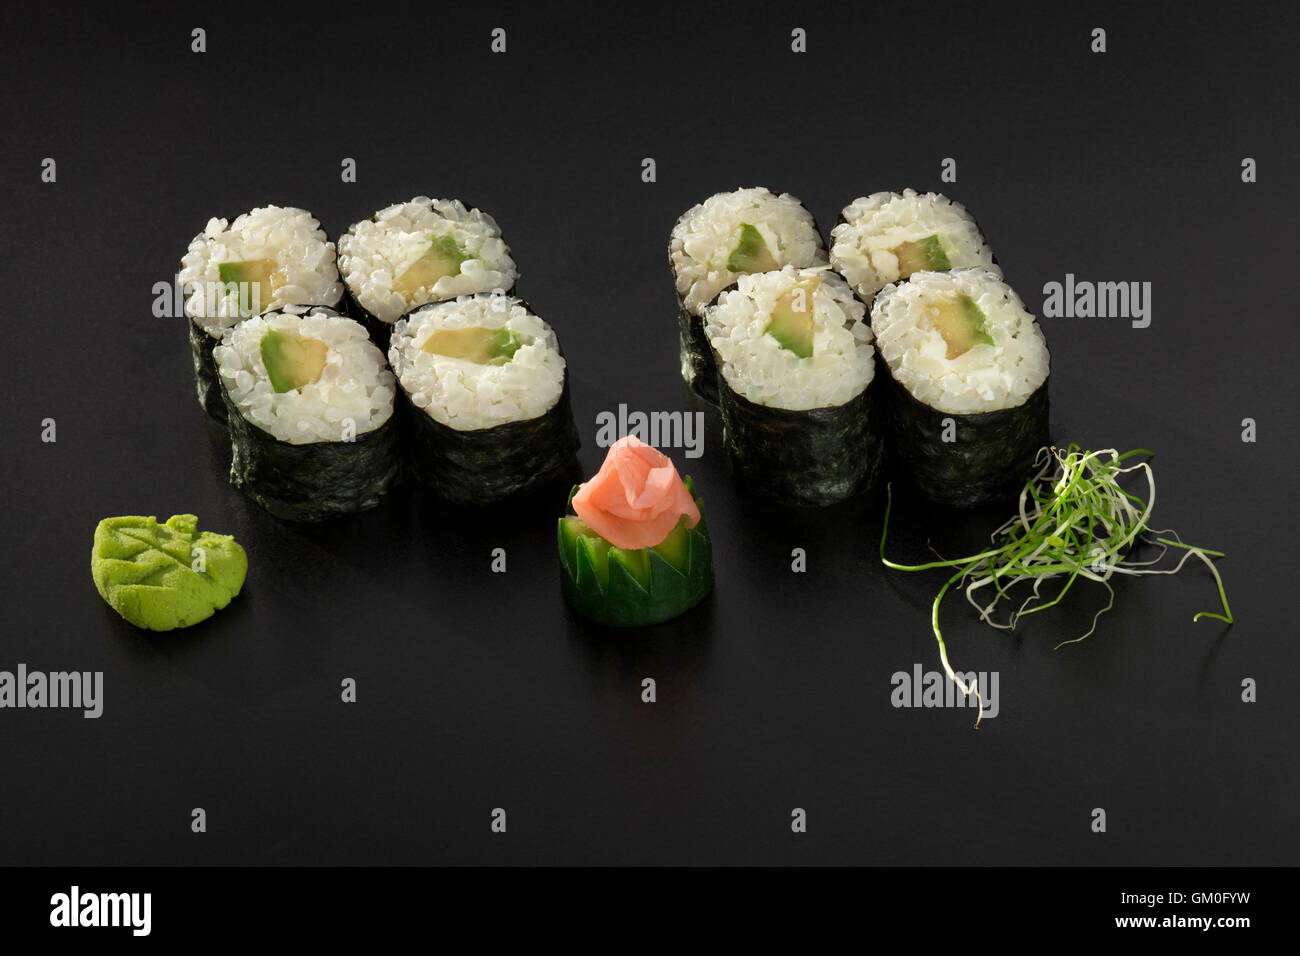 Rouleaux de sushi hosomaki avec avocat décoré de salade d'algues et wasabi Banque D'Images